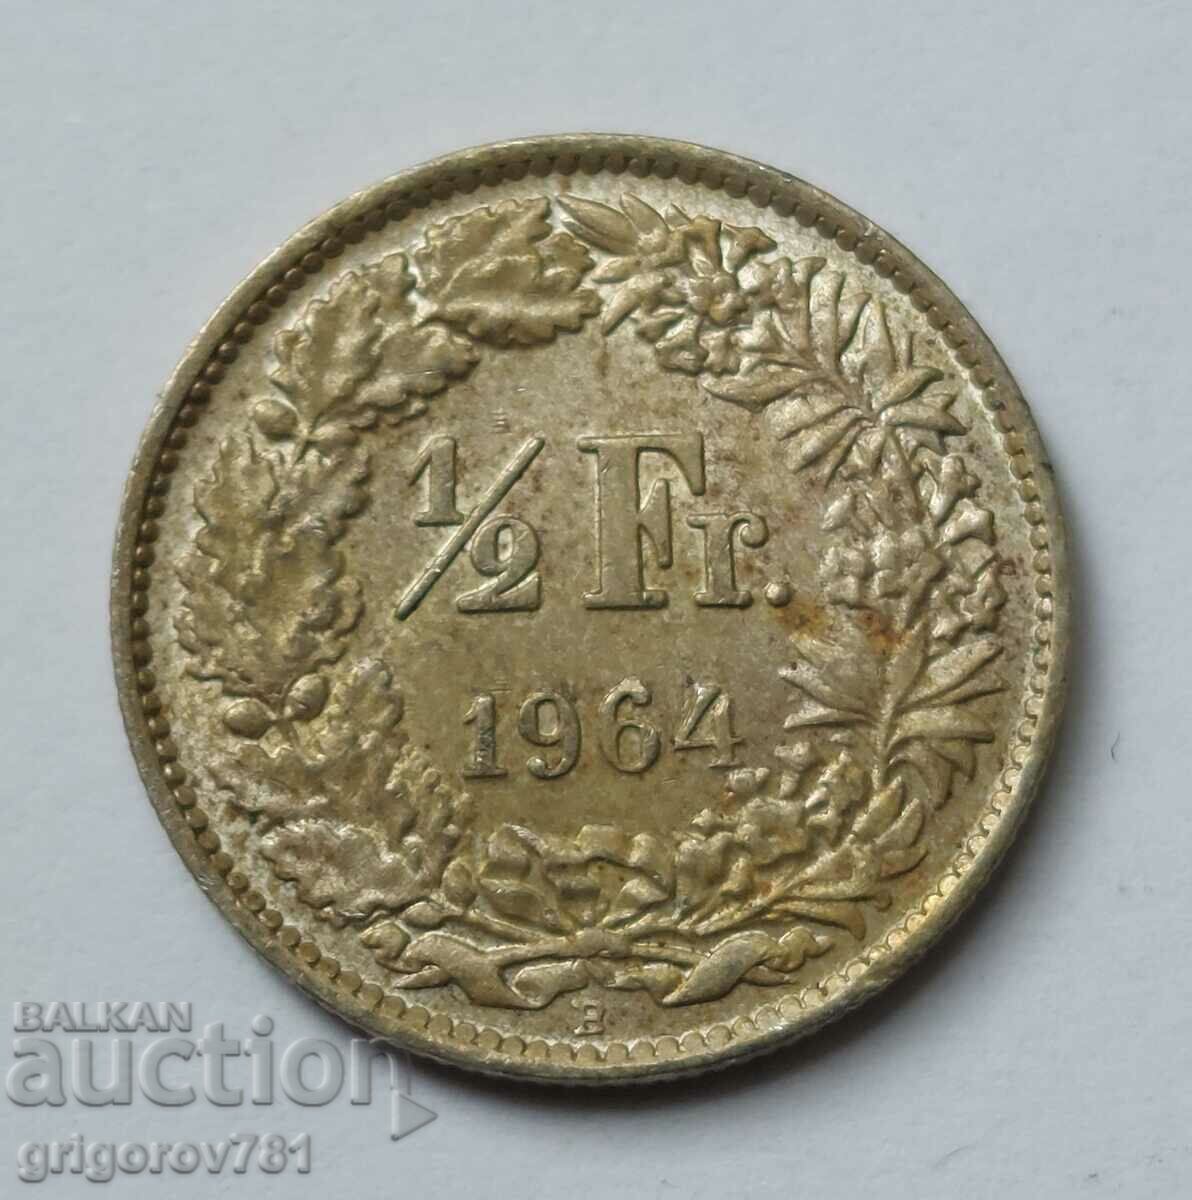 Ασημένιο φράγκο 1/2 Ελβετία 1964 Β - Ασημένιο νόμισμα #58